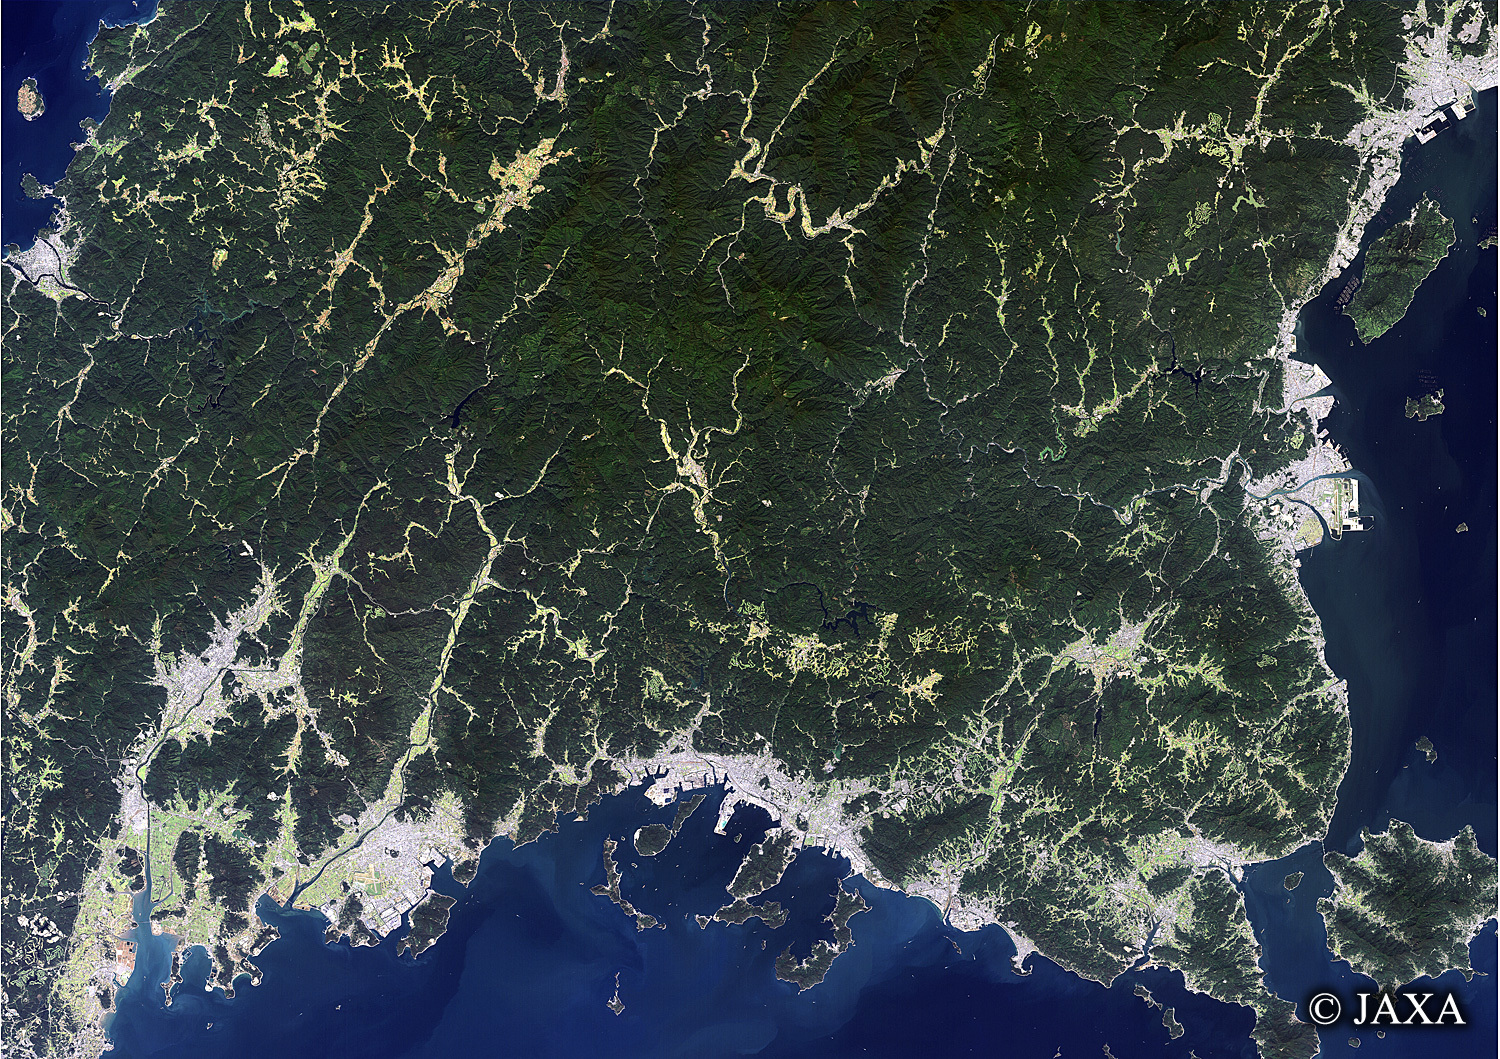 だいちから見た日本の都市 周南市:衛星画像